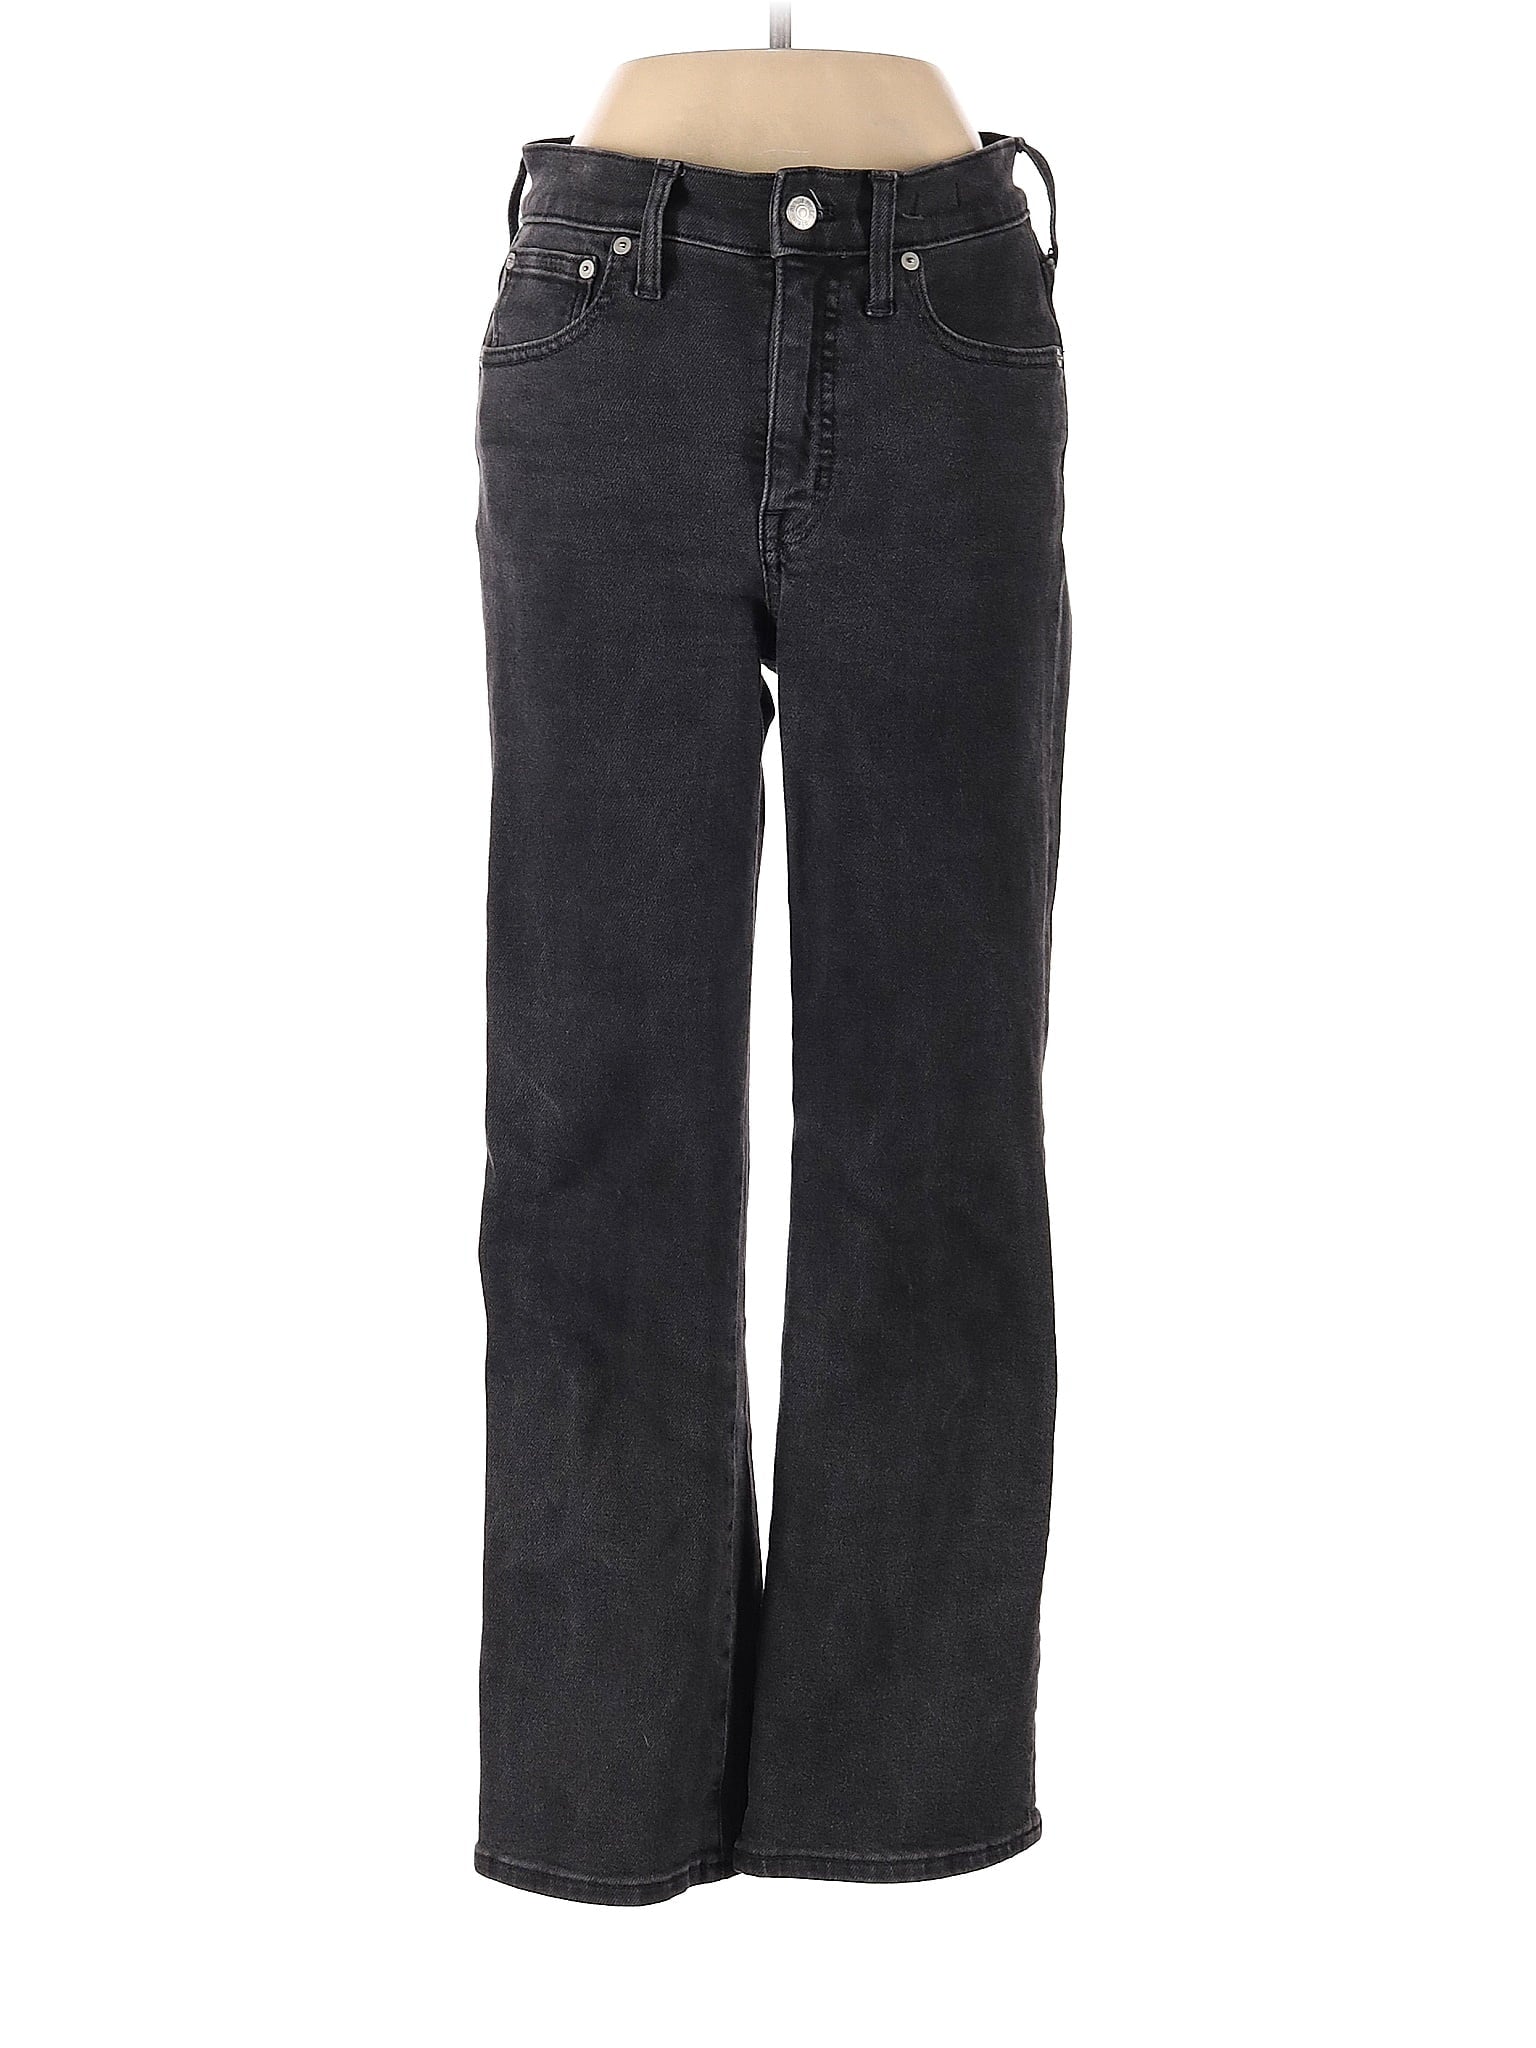 High-Rise Cali Demi-Boot Jeans In Starkey Wash waist size - 27